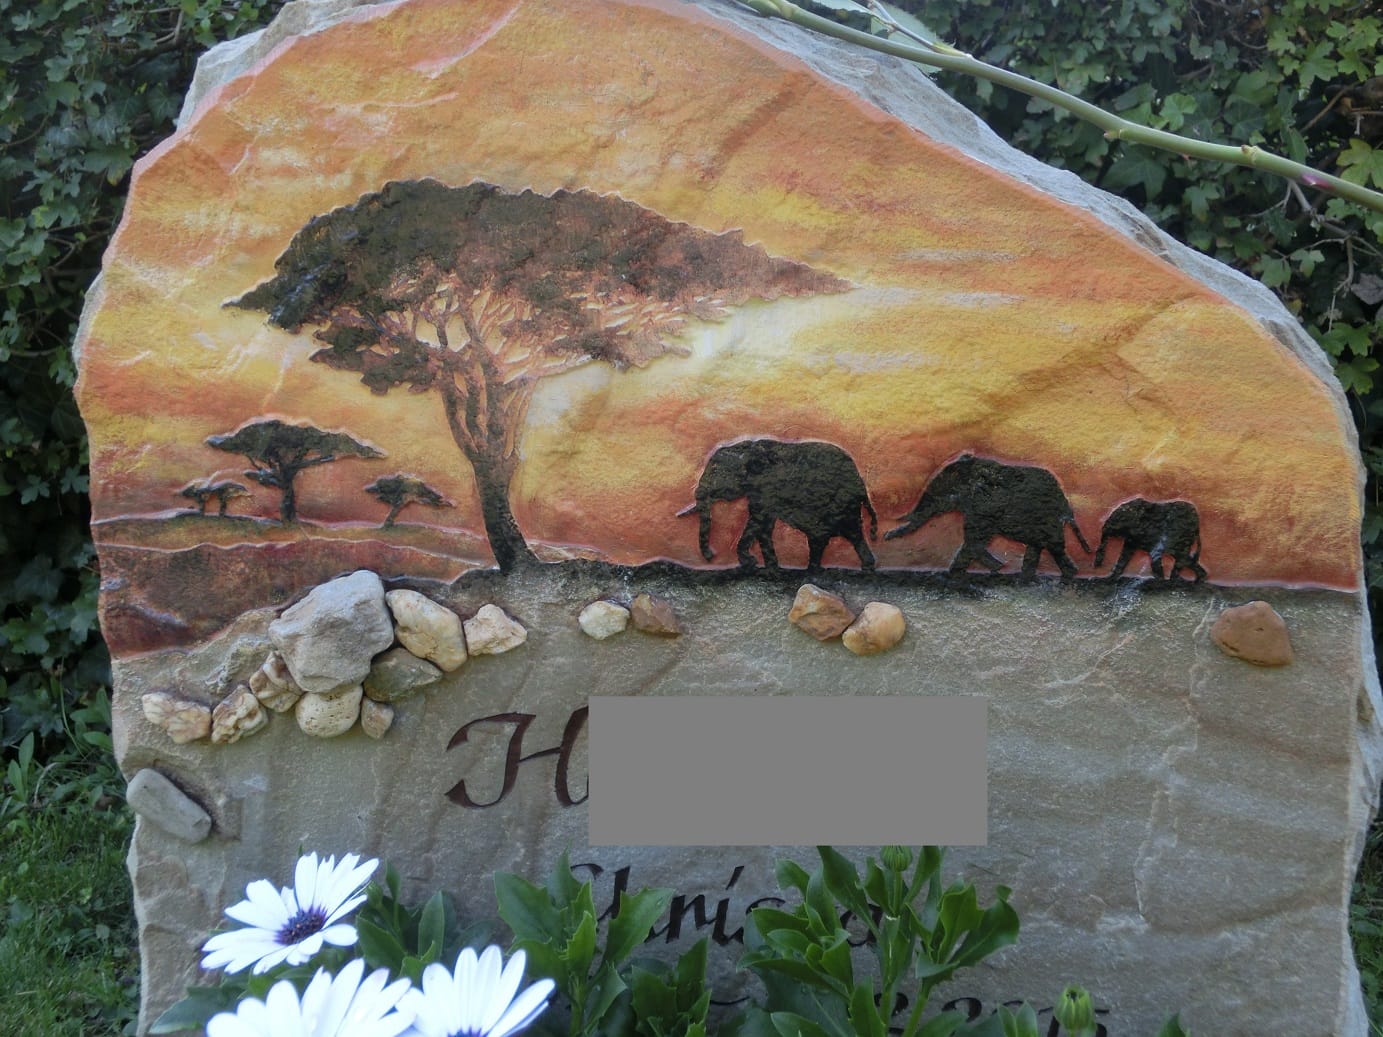 Elefanten-Grabstein: Laut Thorsten Benkel und Matthias Meitzler zählen neben Katzen (Löwen) die Elefanten zu den häufigsten Grabmaltieren.